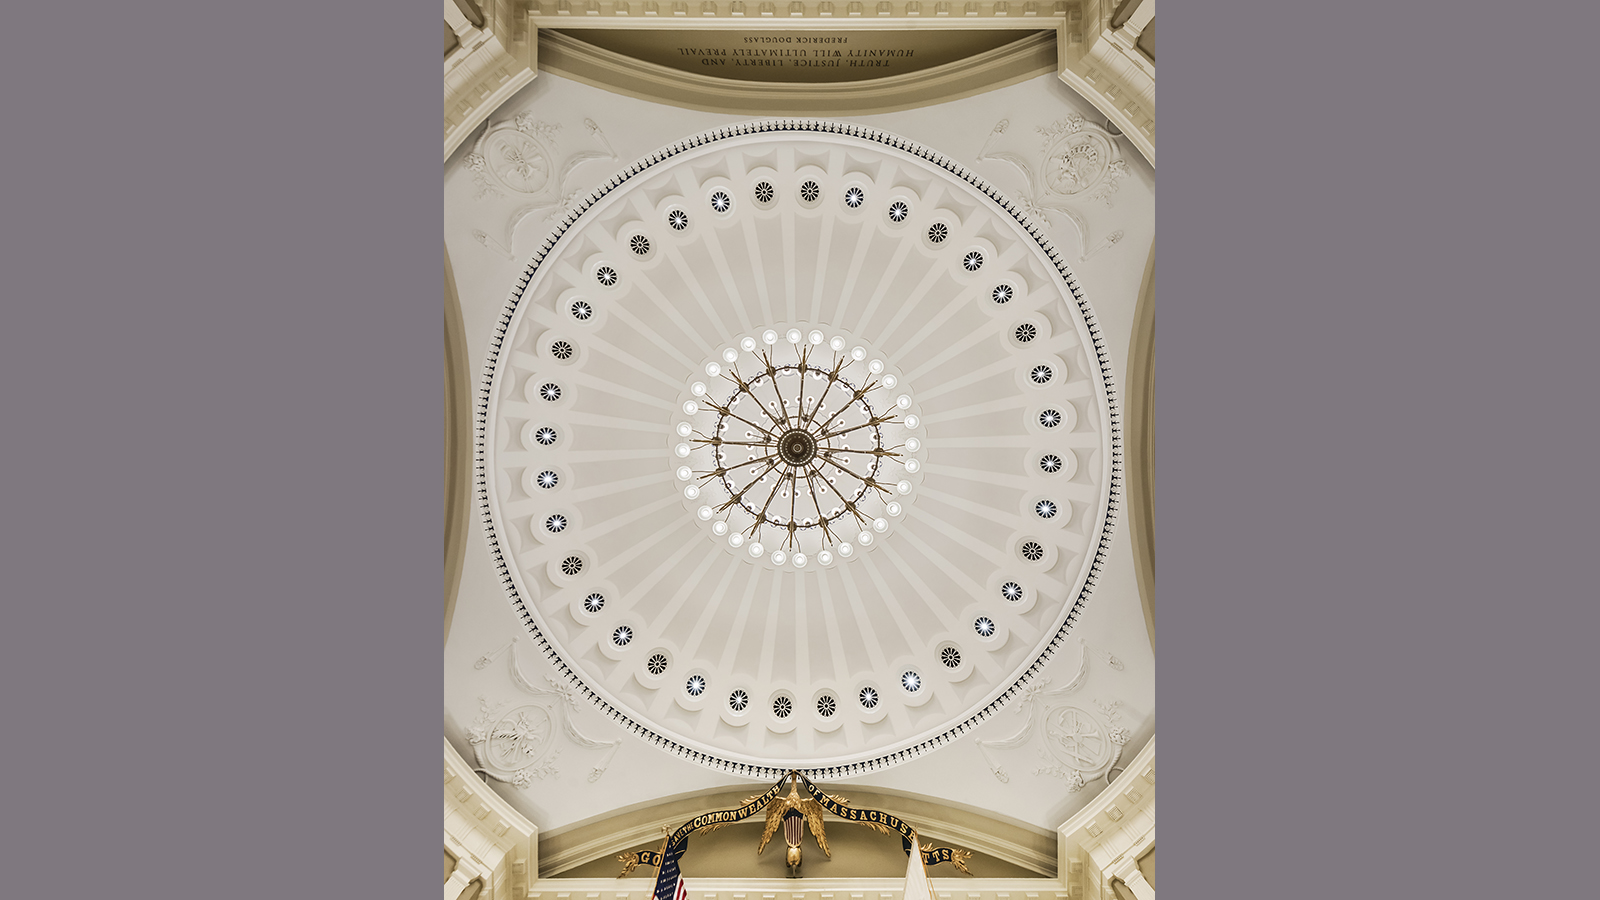 Mass State House Senate Chamber